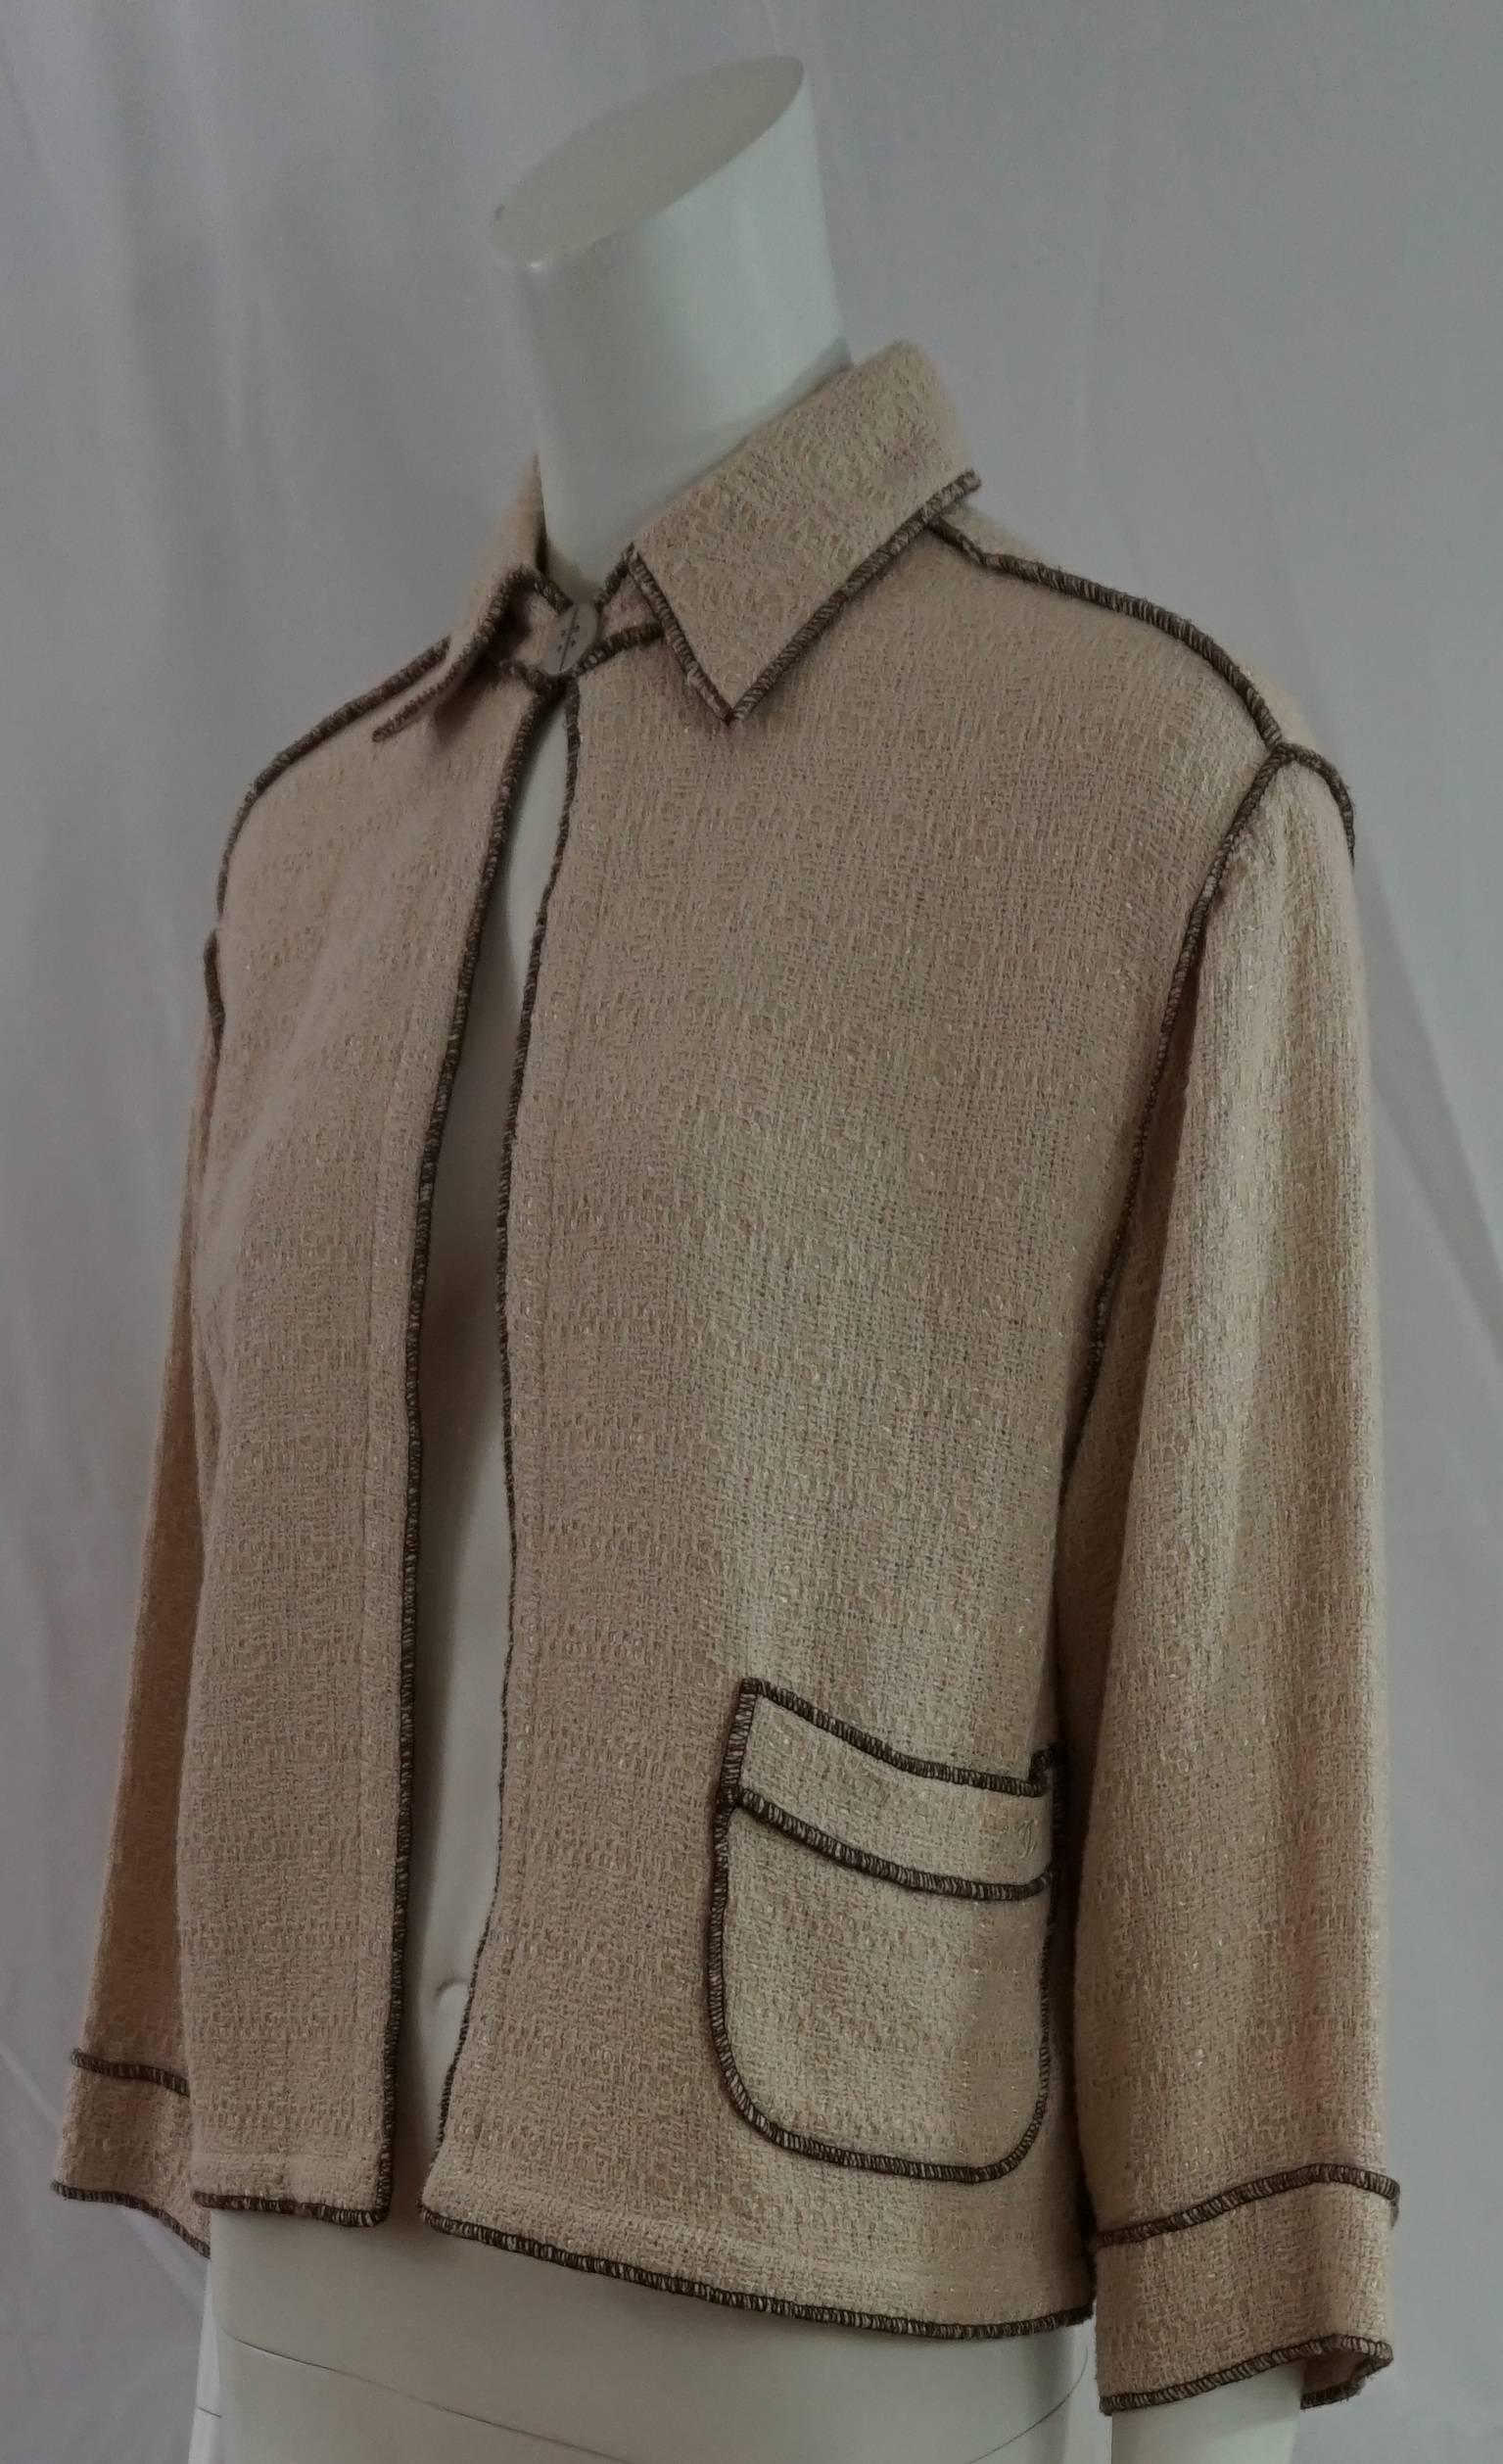 Chanel Runway Spring 1999 Collection Haferflockenfarbene Baumwollstrickjacke mit braunen Nähten - Größe 38. Diese schöne hafermehlfarbene/beigefarbene Baumwollstrickjacke im leichten Box-Style/Semi-Crop-Stil hat 3/4-Ärmel und eine überschnittene